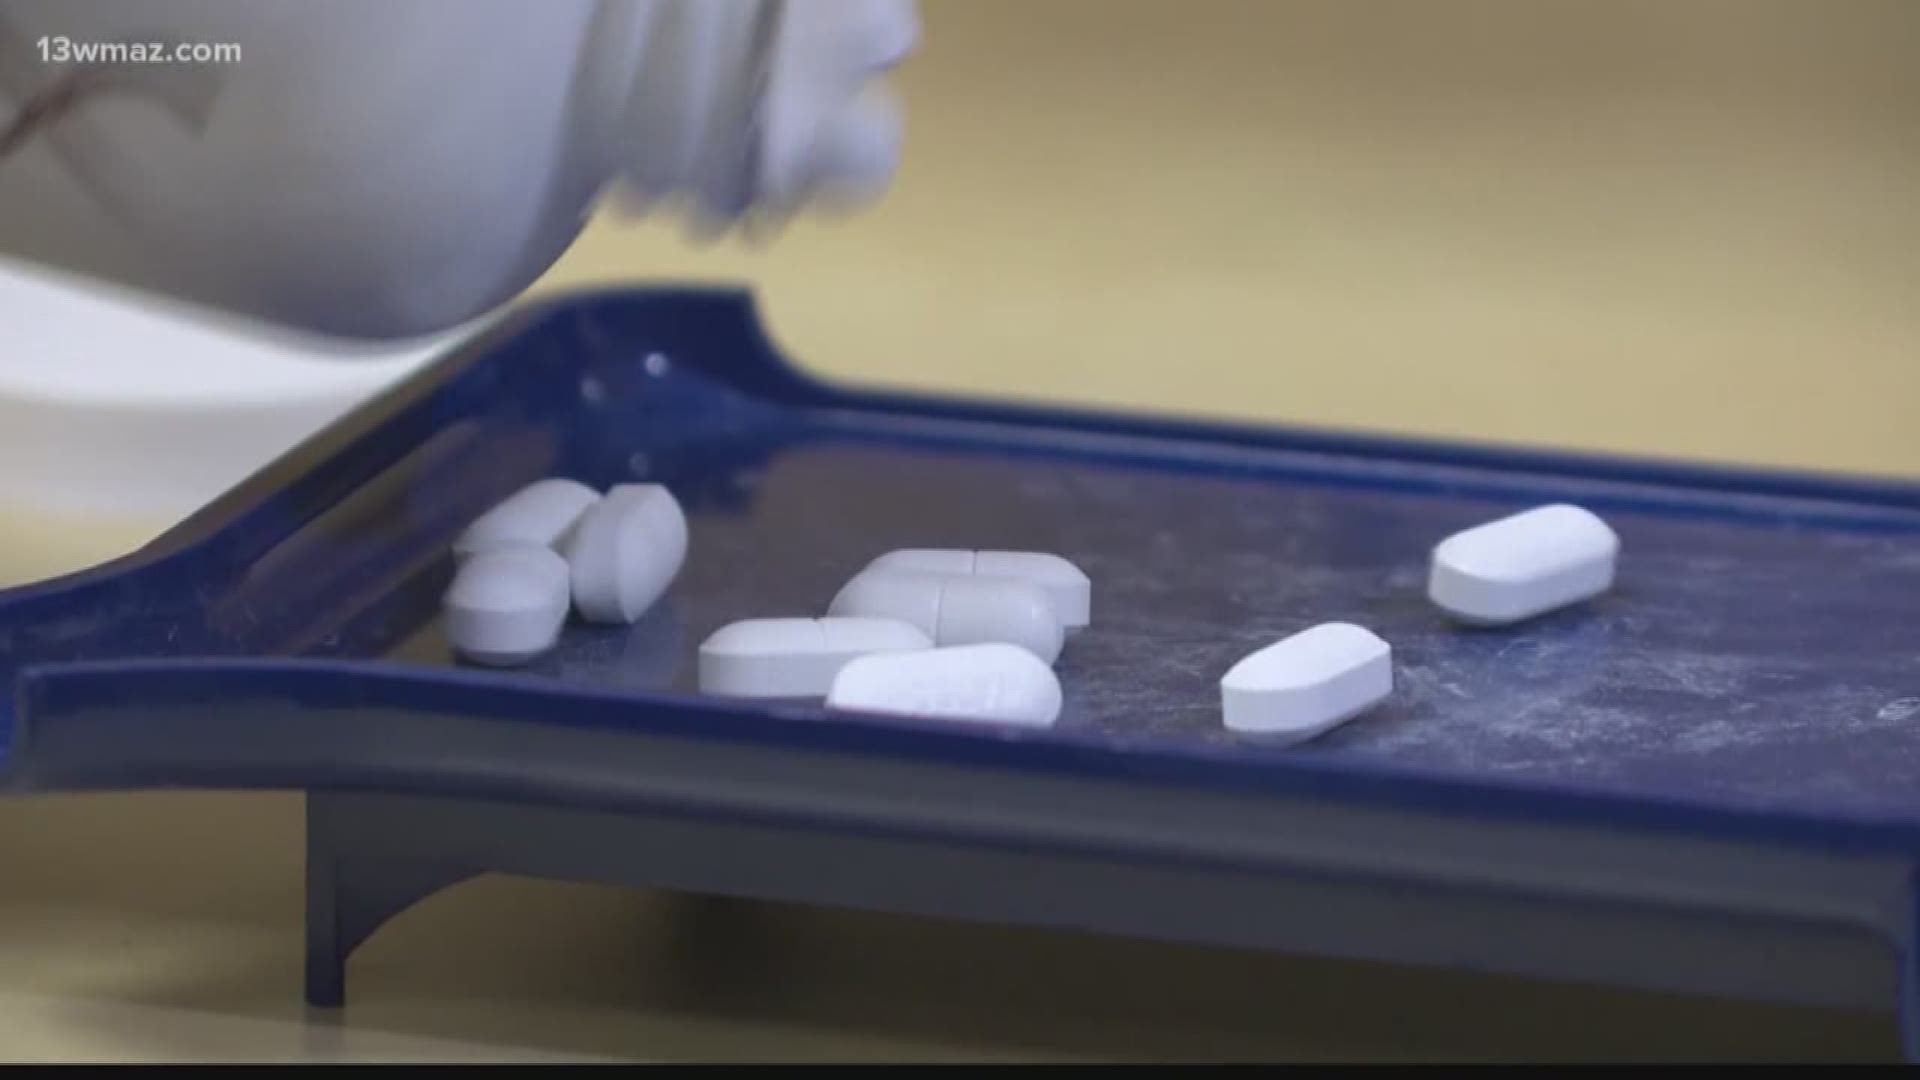 Bibb Co. could join lawsuit against prescription drug makers